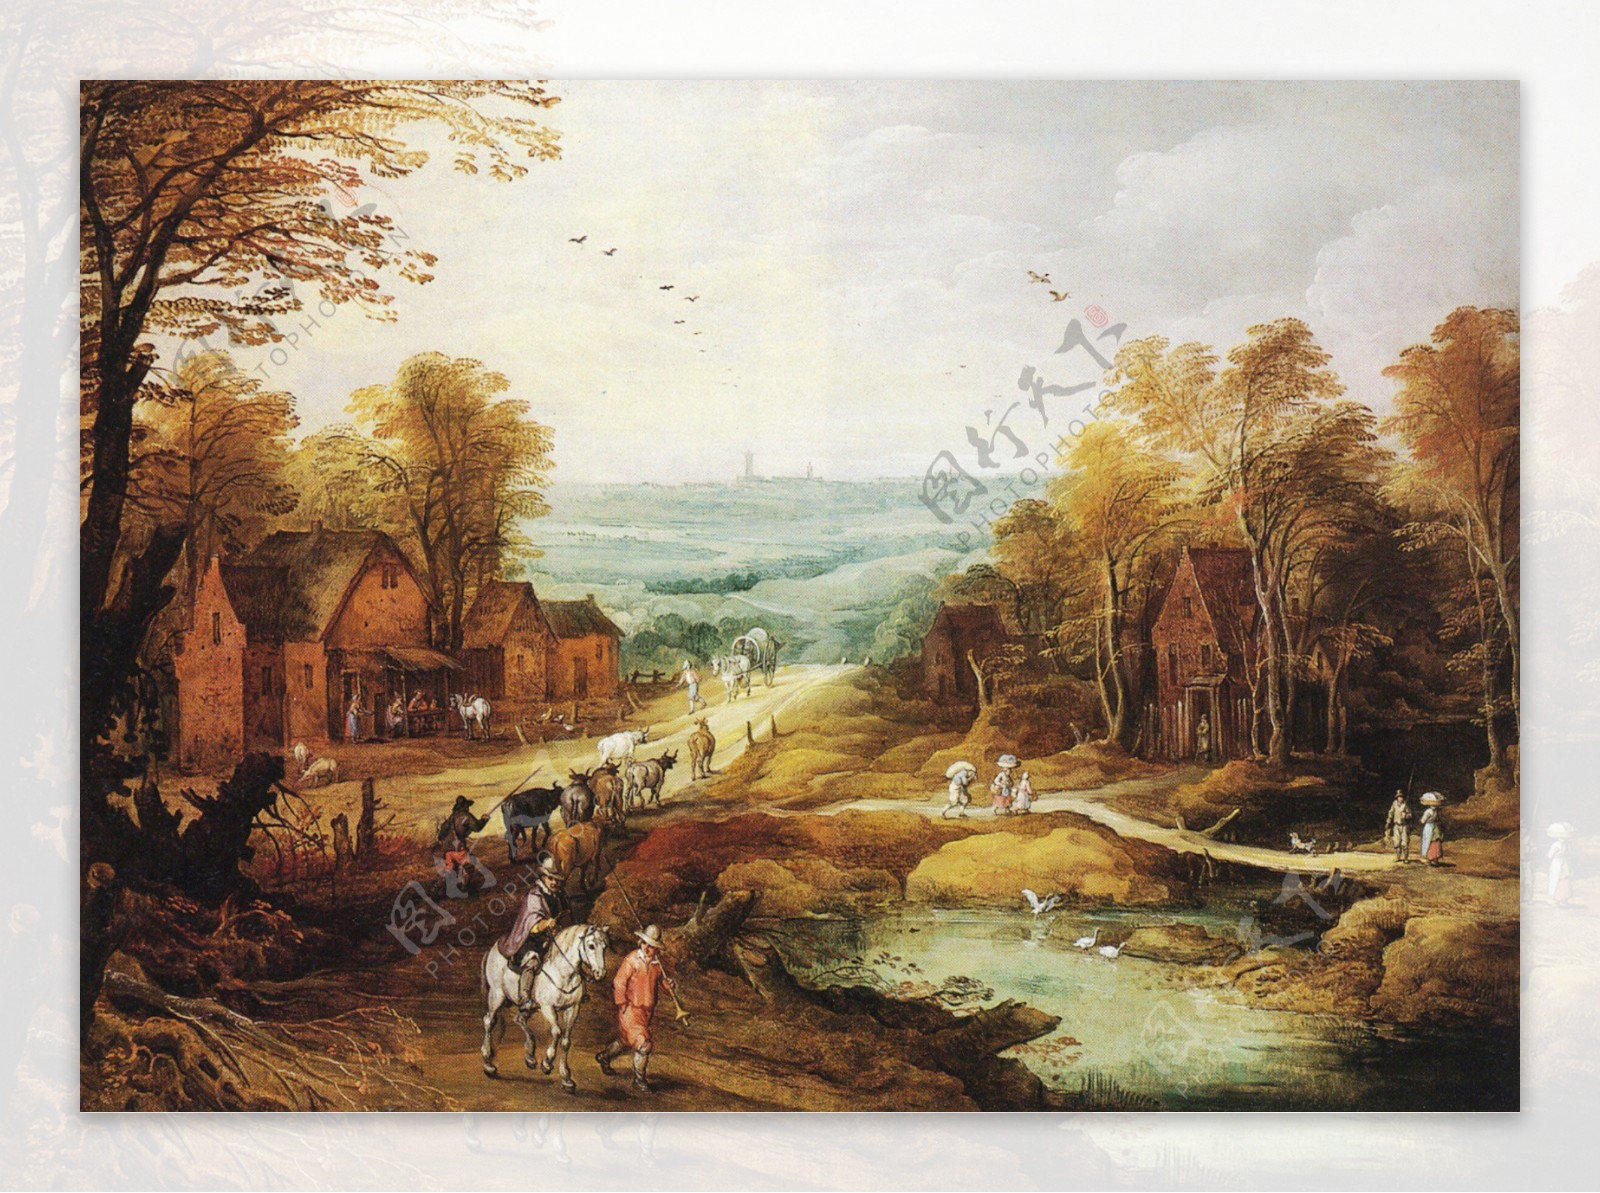 中世纪荷兰景观图片